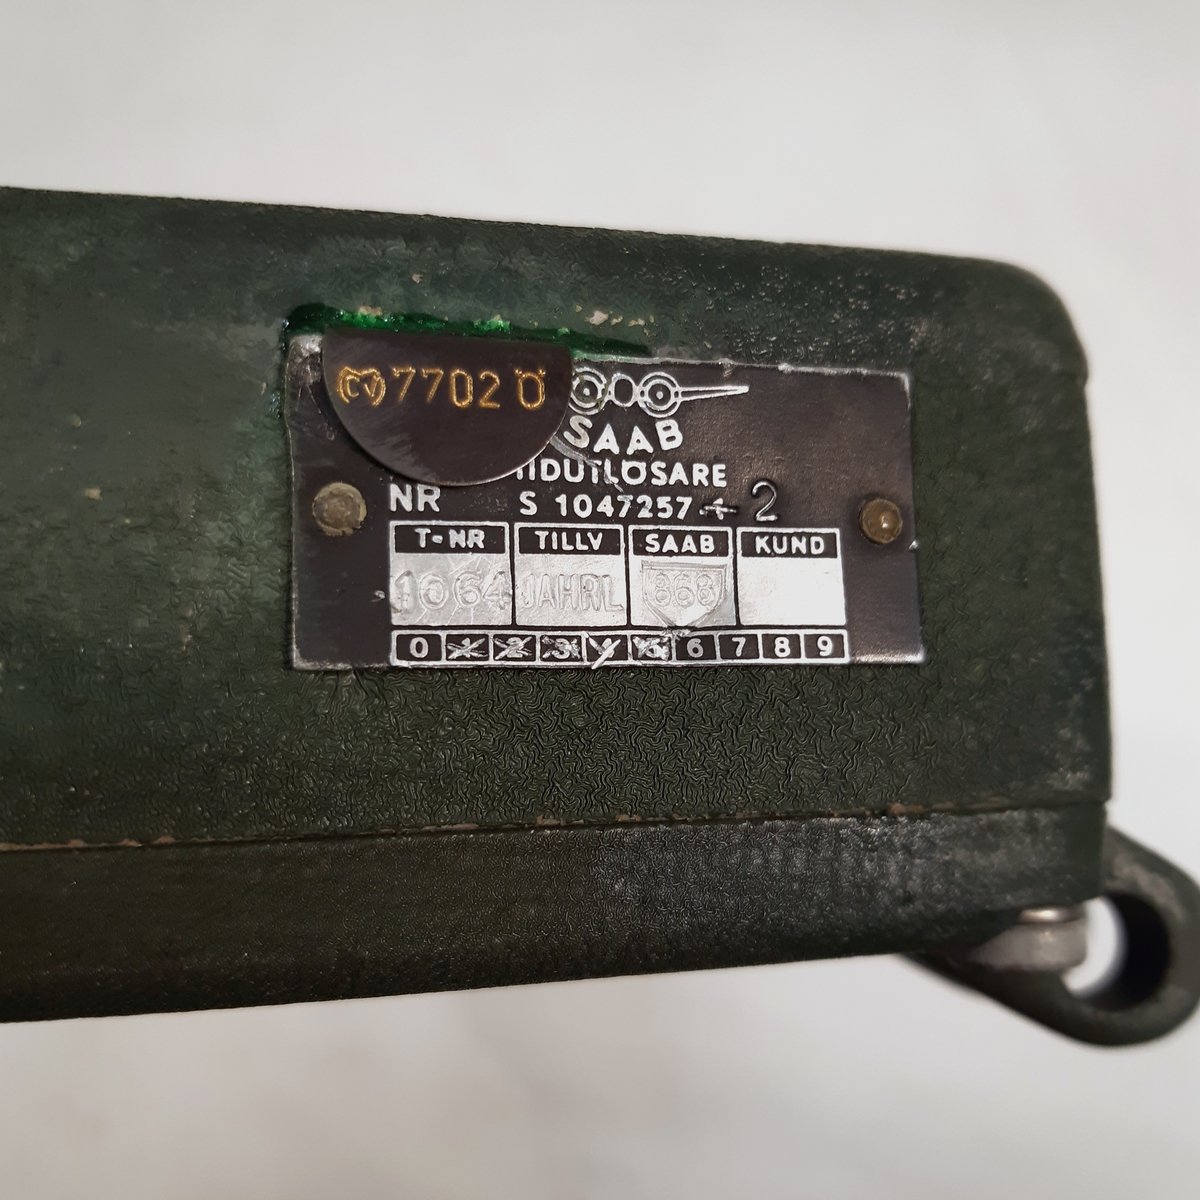 Tidutlösare, Nr S 1047257, i grönlackerad metall och med en inre fjäder-mekanism.